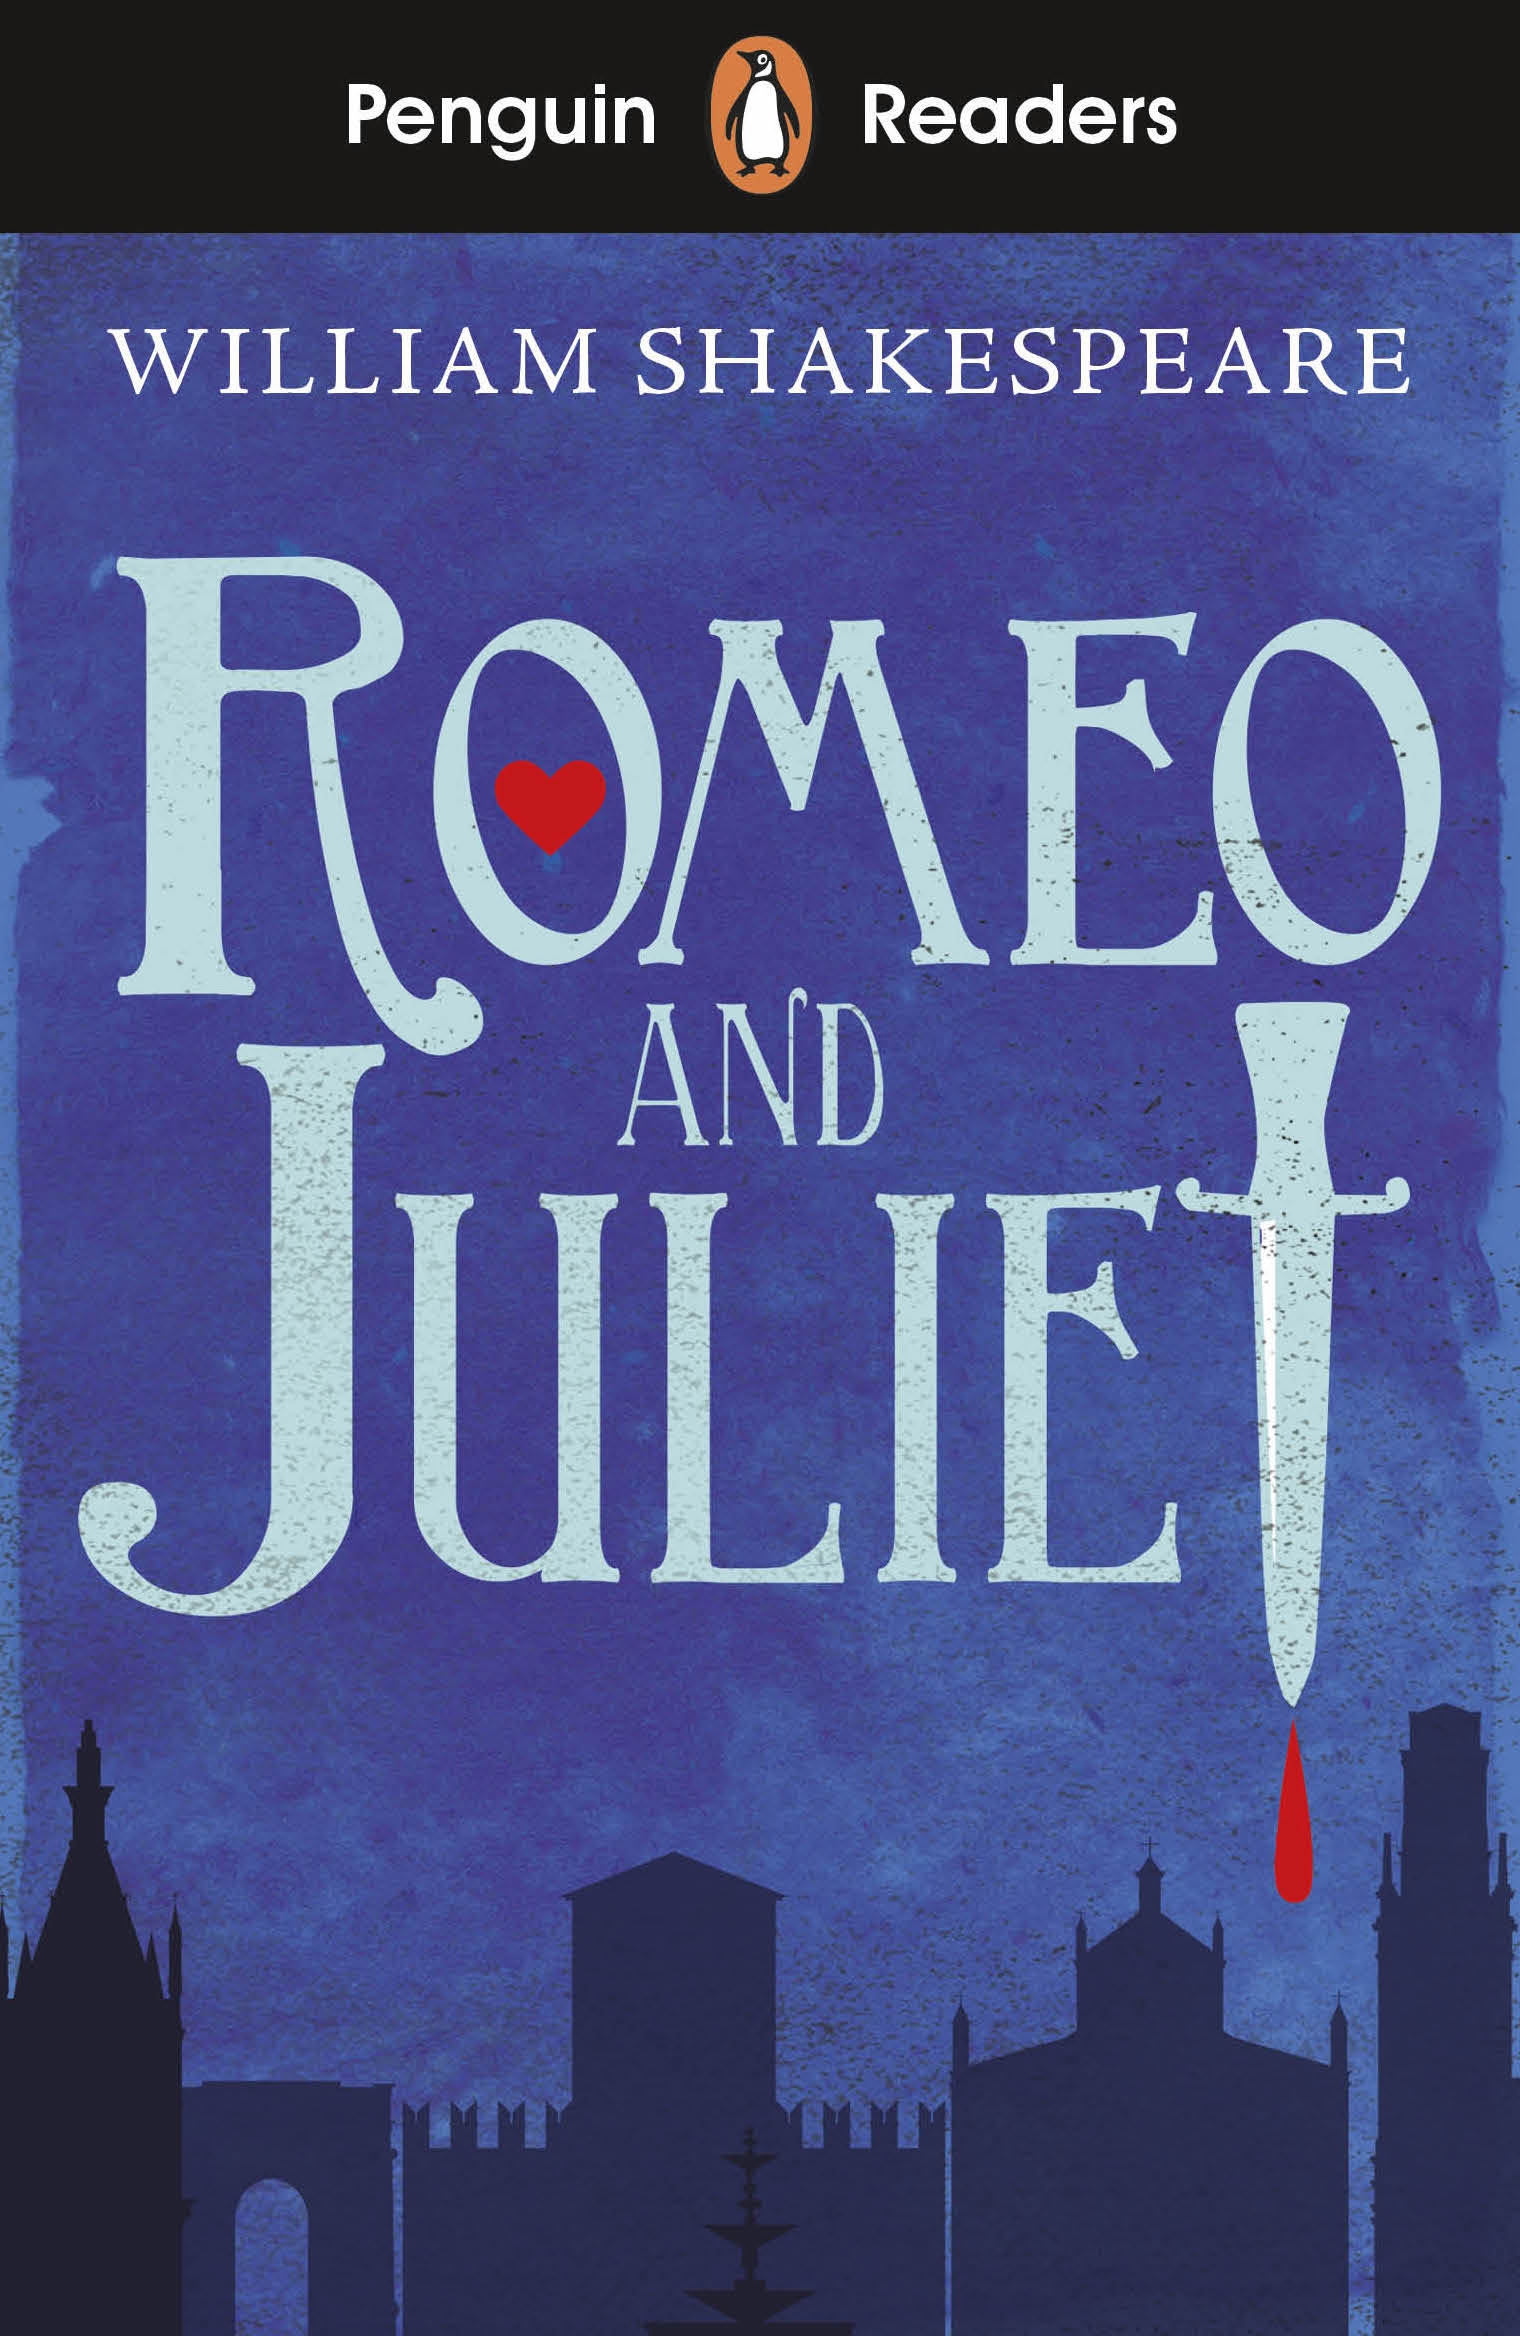 Penguin readers for EAL: Starter Level Romeo and Juliet